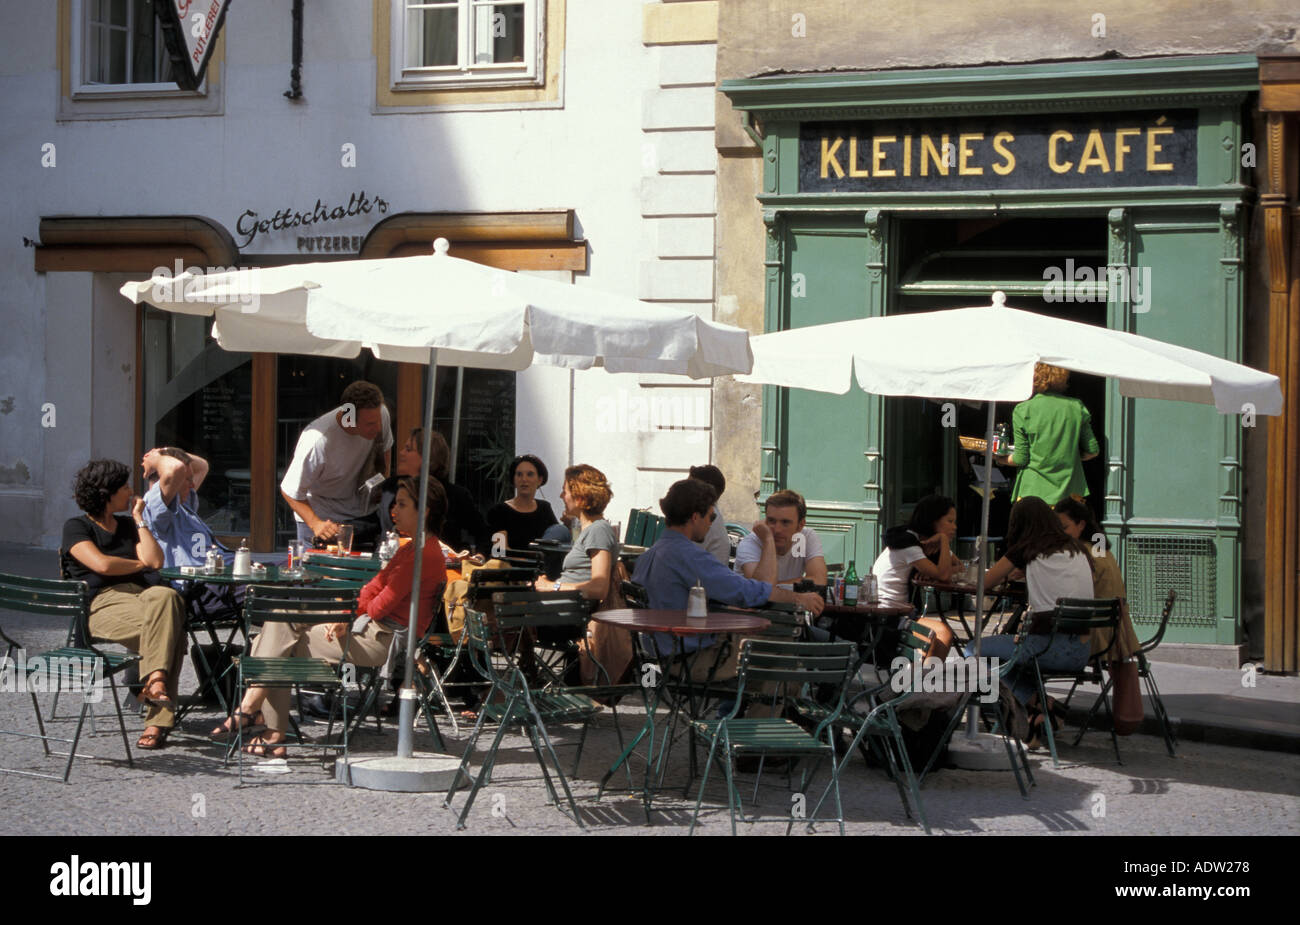 cafe Kleines Cafe in Vienna Stock Photo